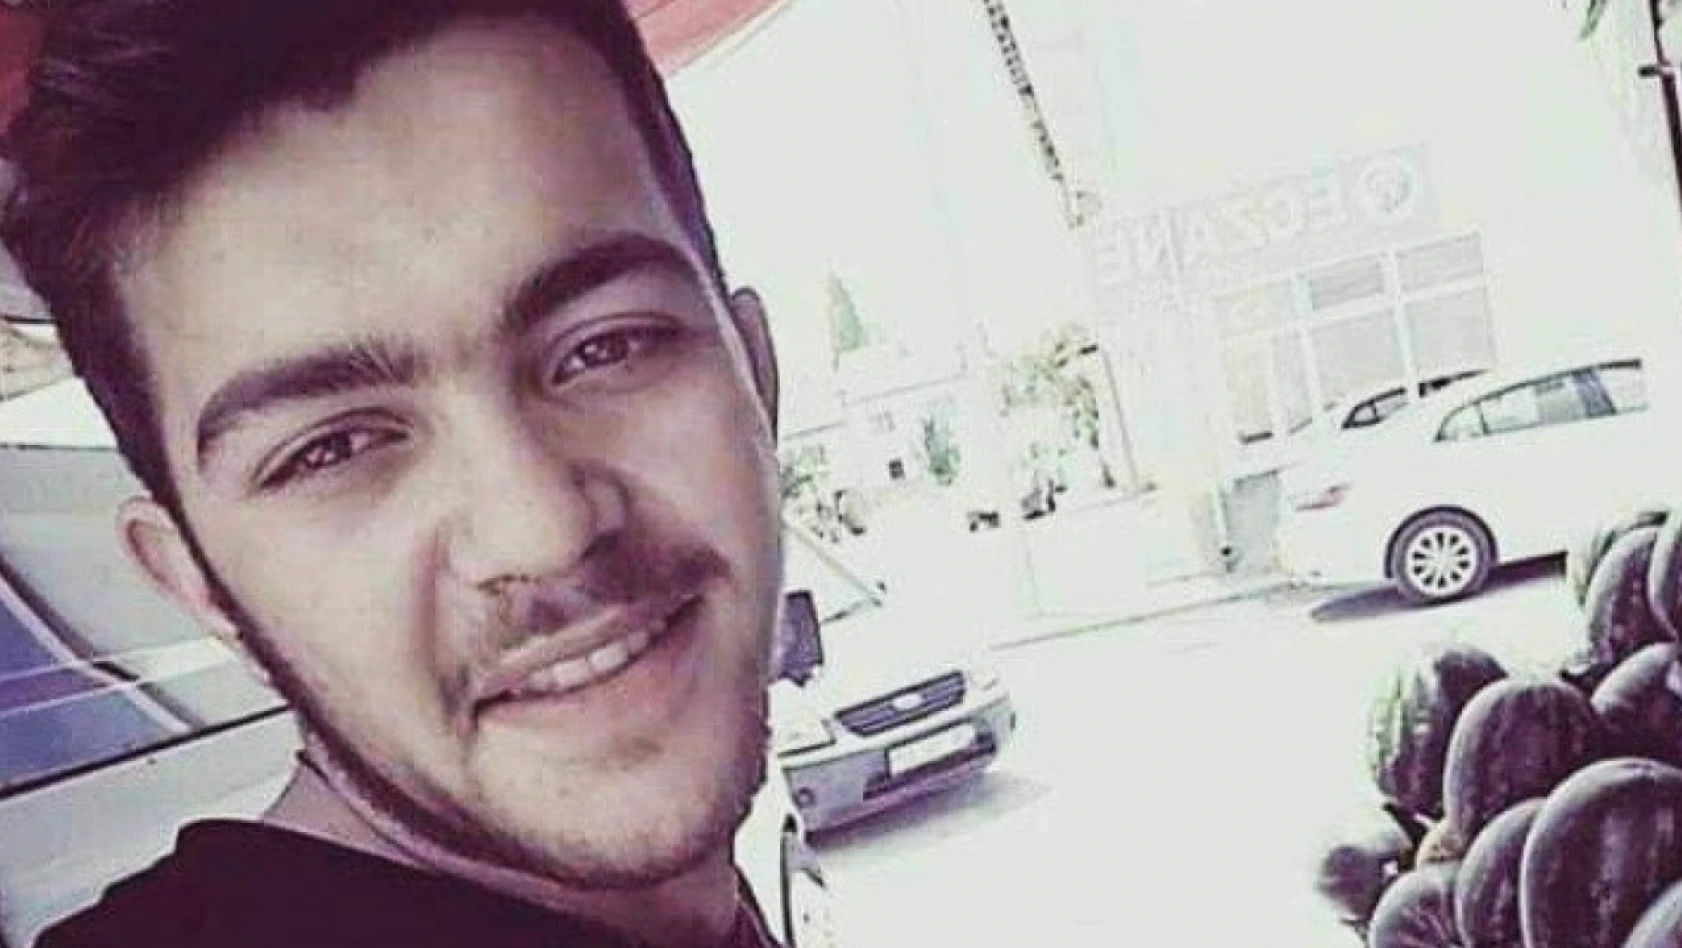 Kayseri'de öldürülen gencin duruşması devam ediyor